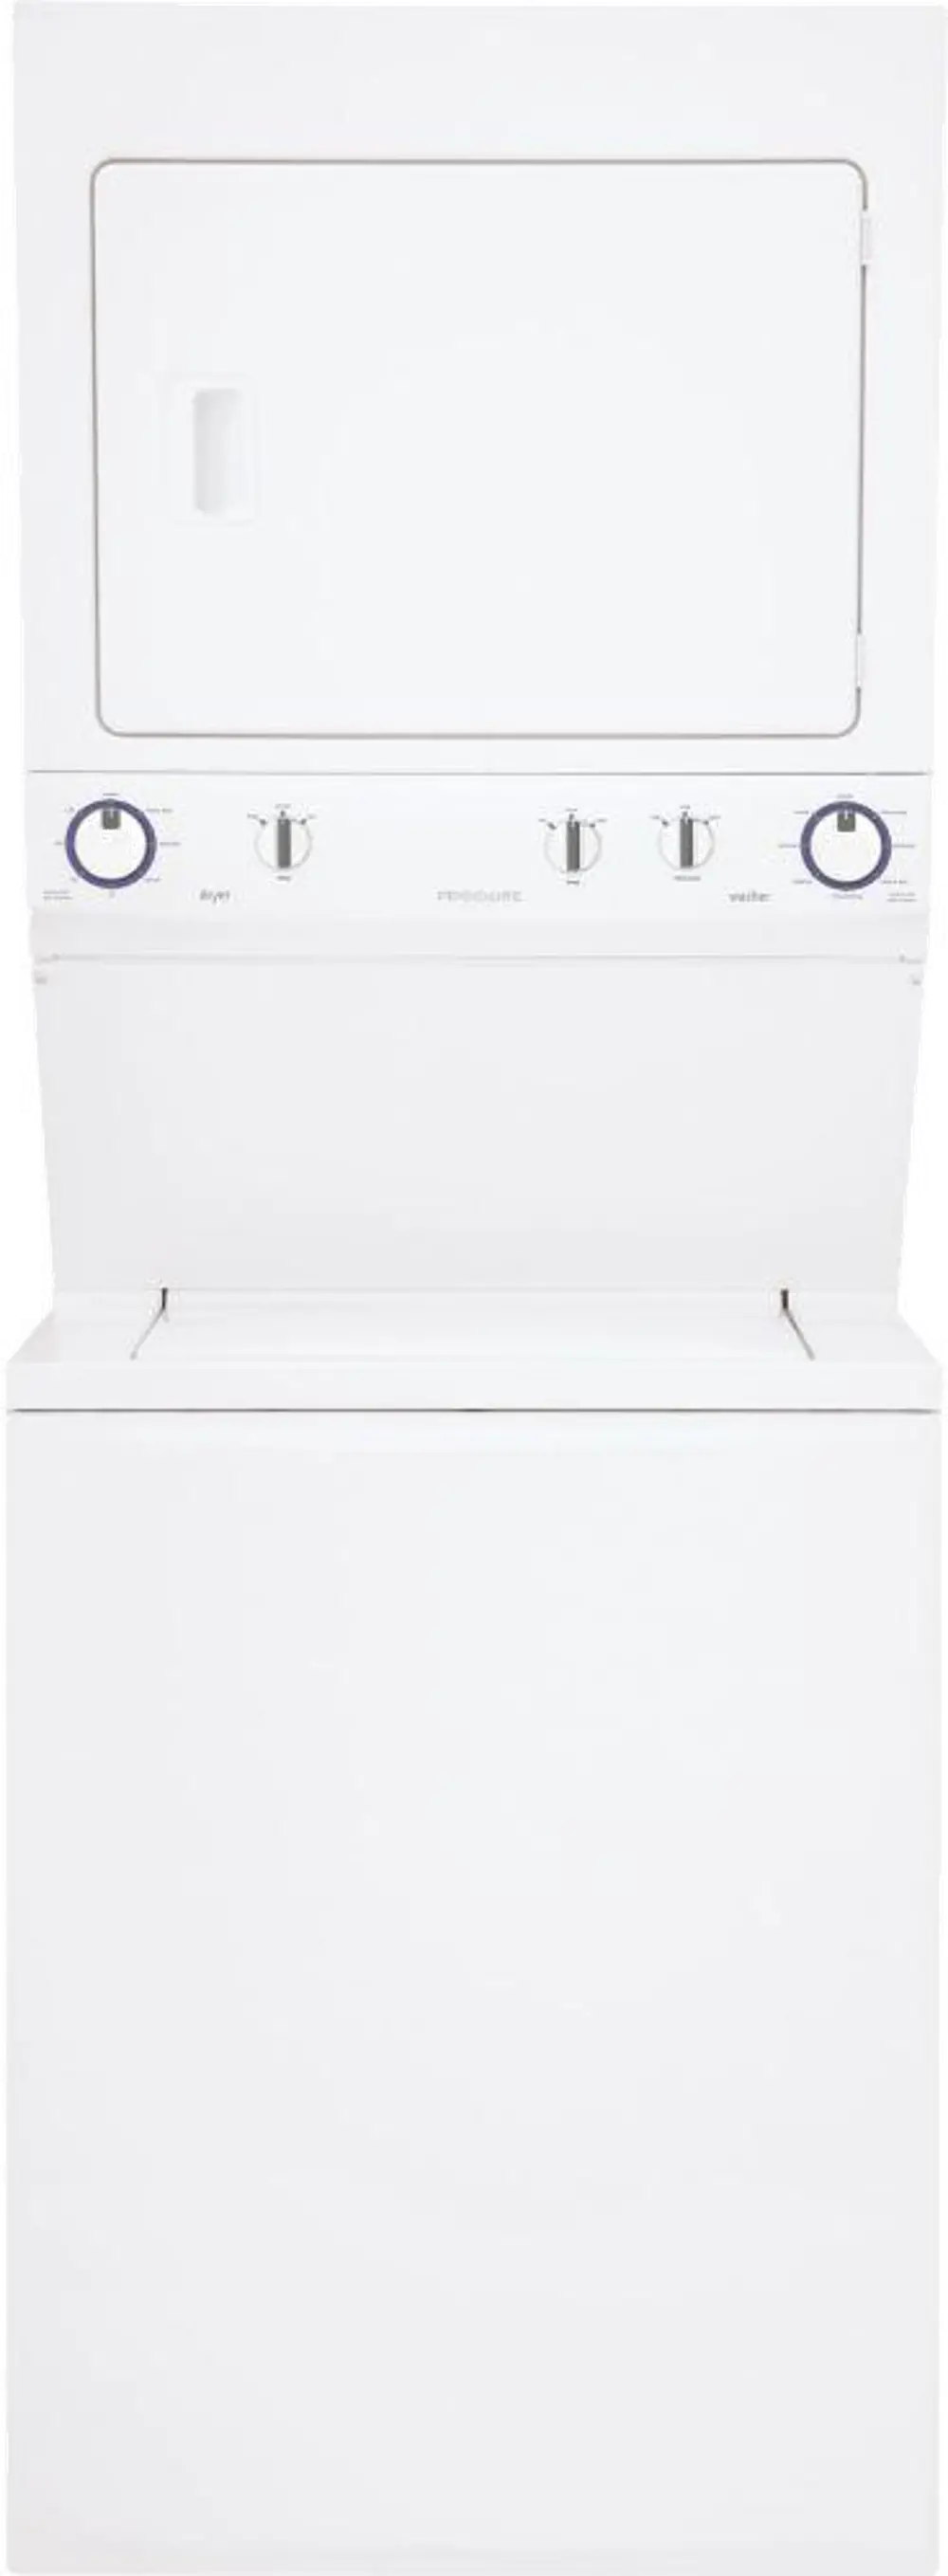 FFLE3911QW Frigidaire Laundry Center - White-1